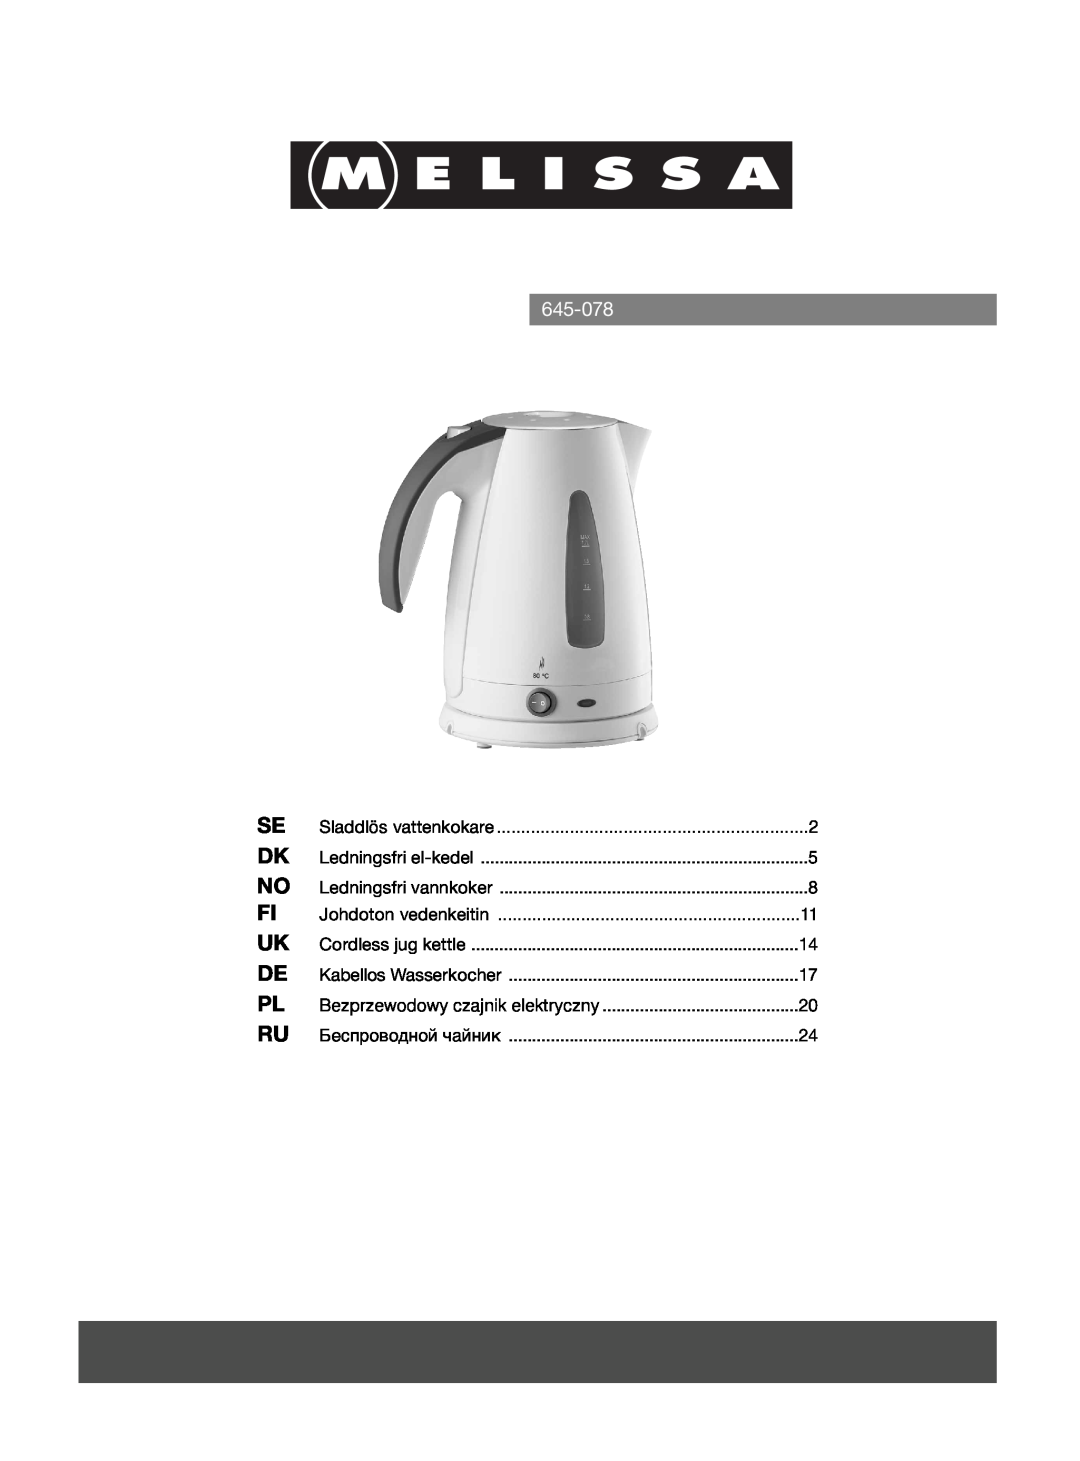 Melissa 645-078 manual Johdoton vedenkeitin, Sladdlös vattenkokare, Cordless jug kettle, Kabellos Wasserkocher 